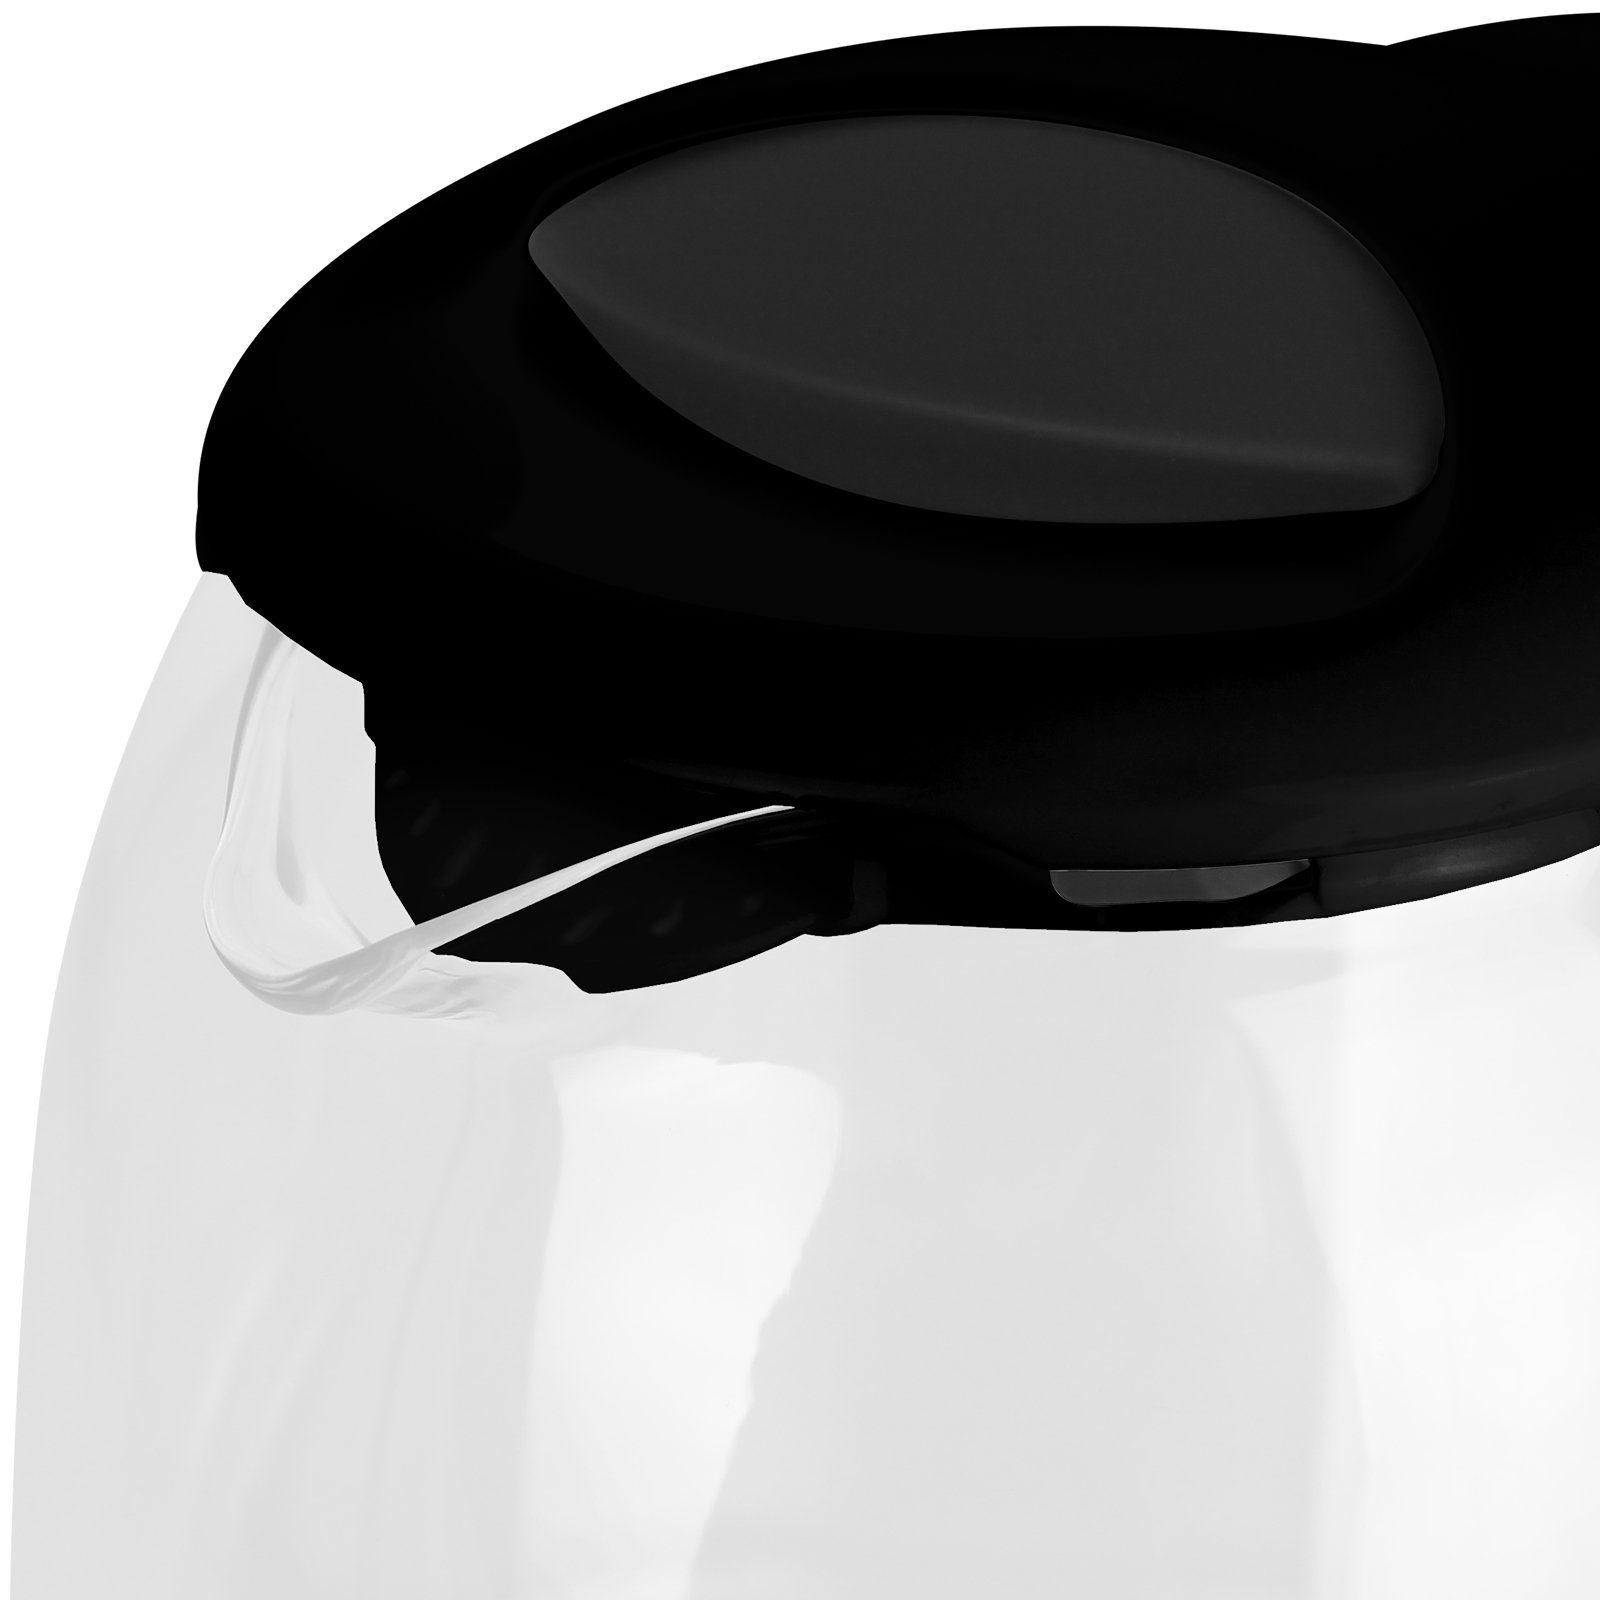 Kabellos, W, Tee 1,7L LED Küchengeräte Wasserkocher Hatex 2200,00 Teekocher Kocher Wasser Glas Schwarz Beleuchtung mit